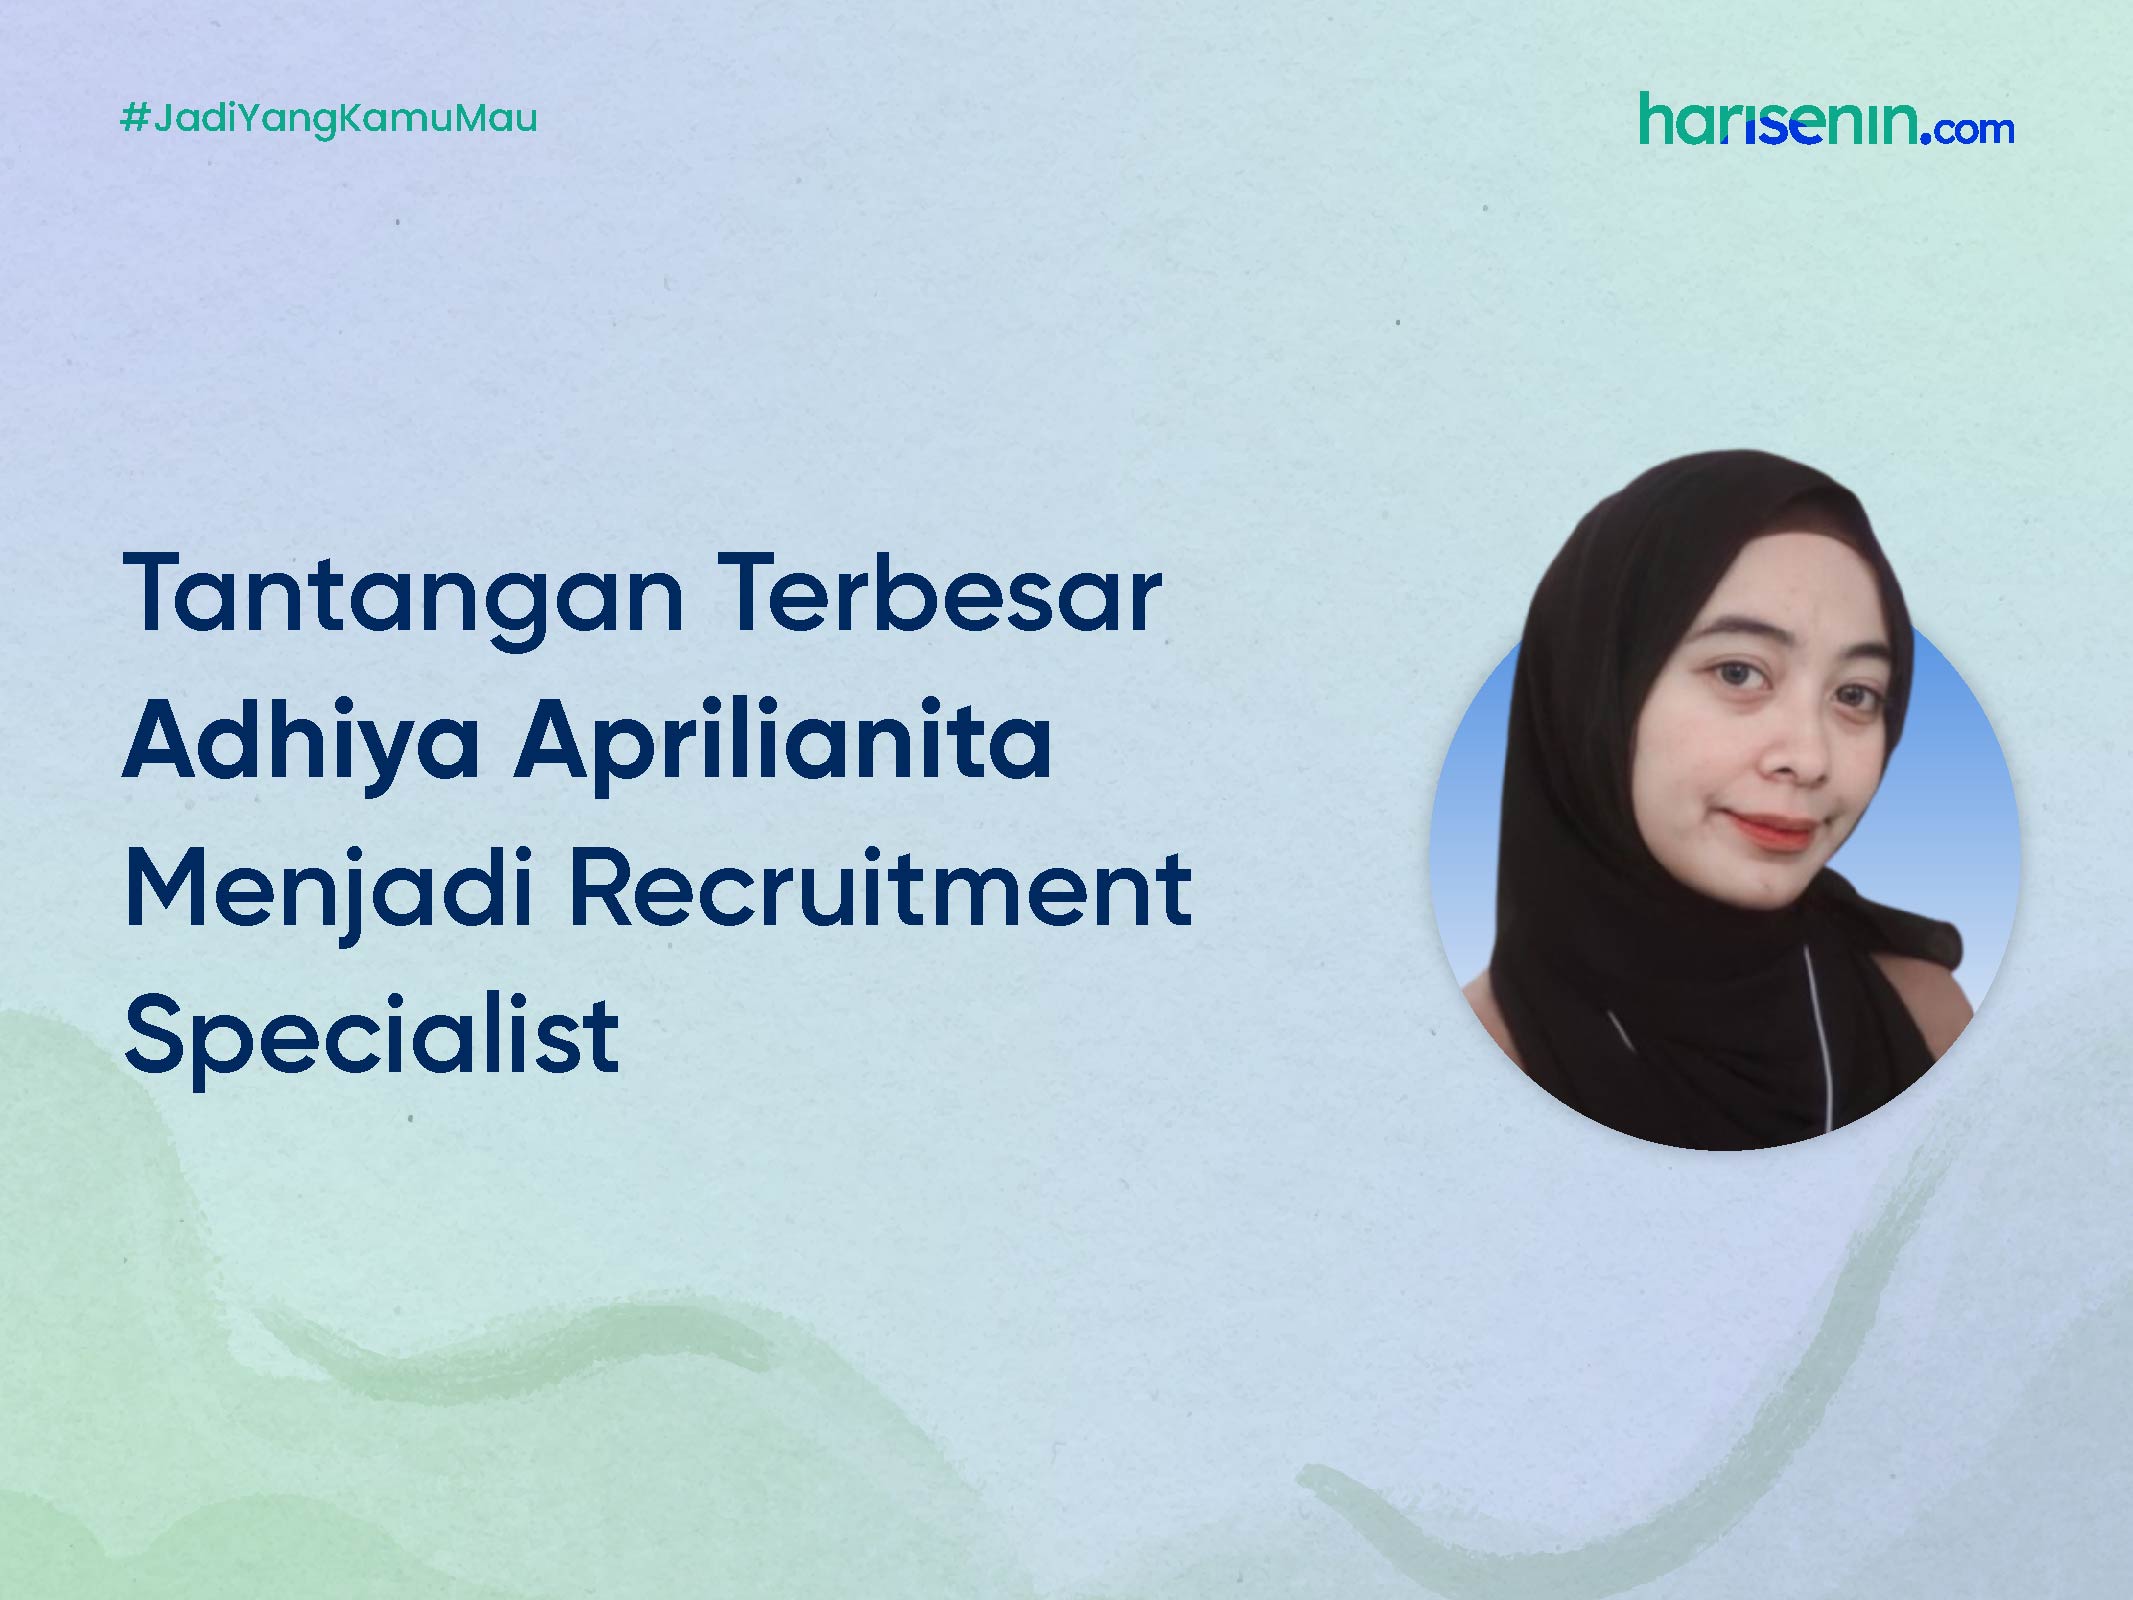 Tantangan Terbesar Adhiya Aprilianita Menjadi Recruitment Specialist